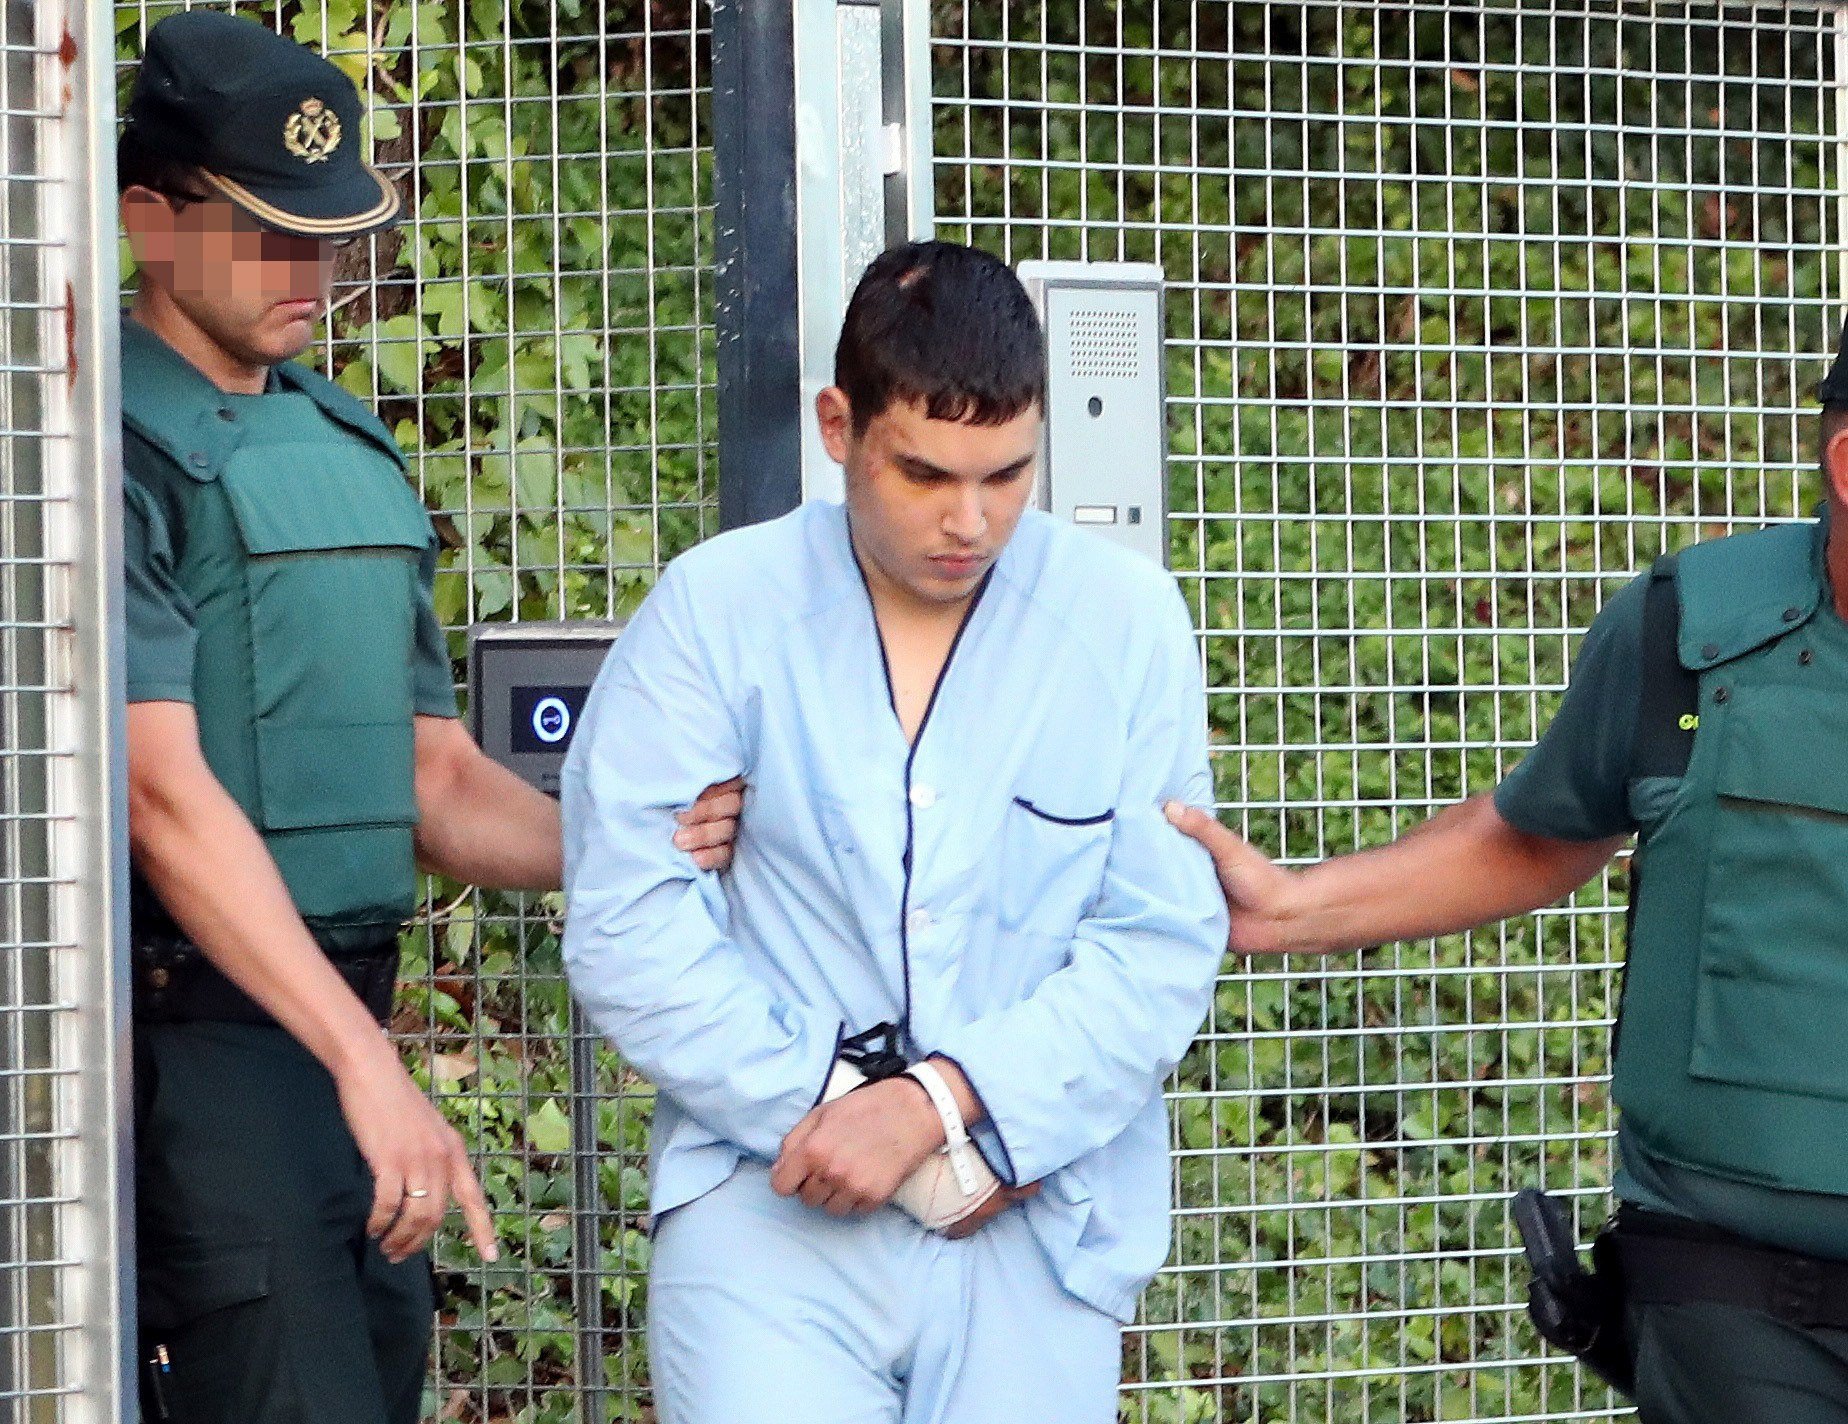 El detenido herido en Alcanar admite que querían atentar contra "monumentos" e "iglesias"